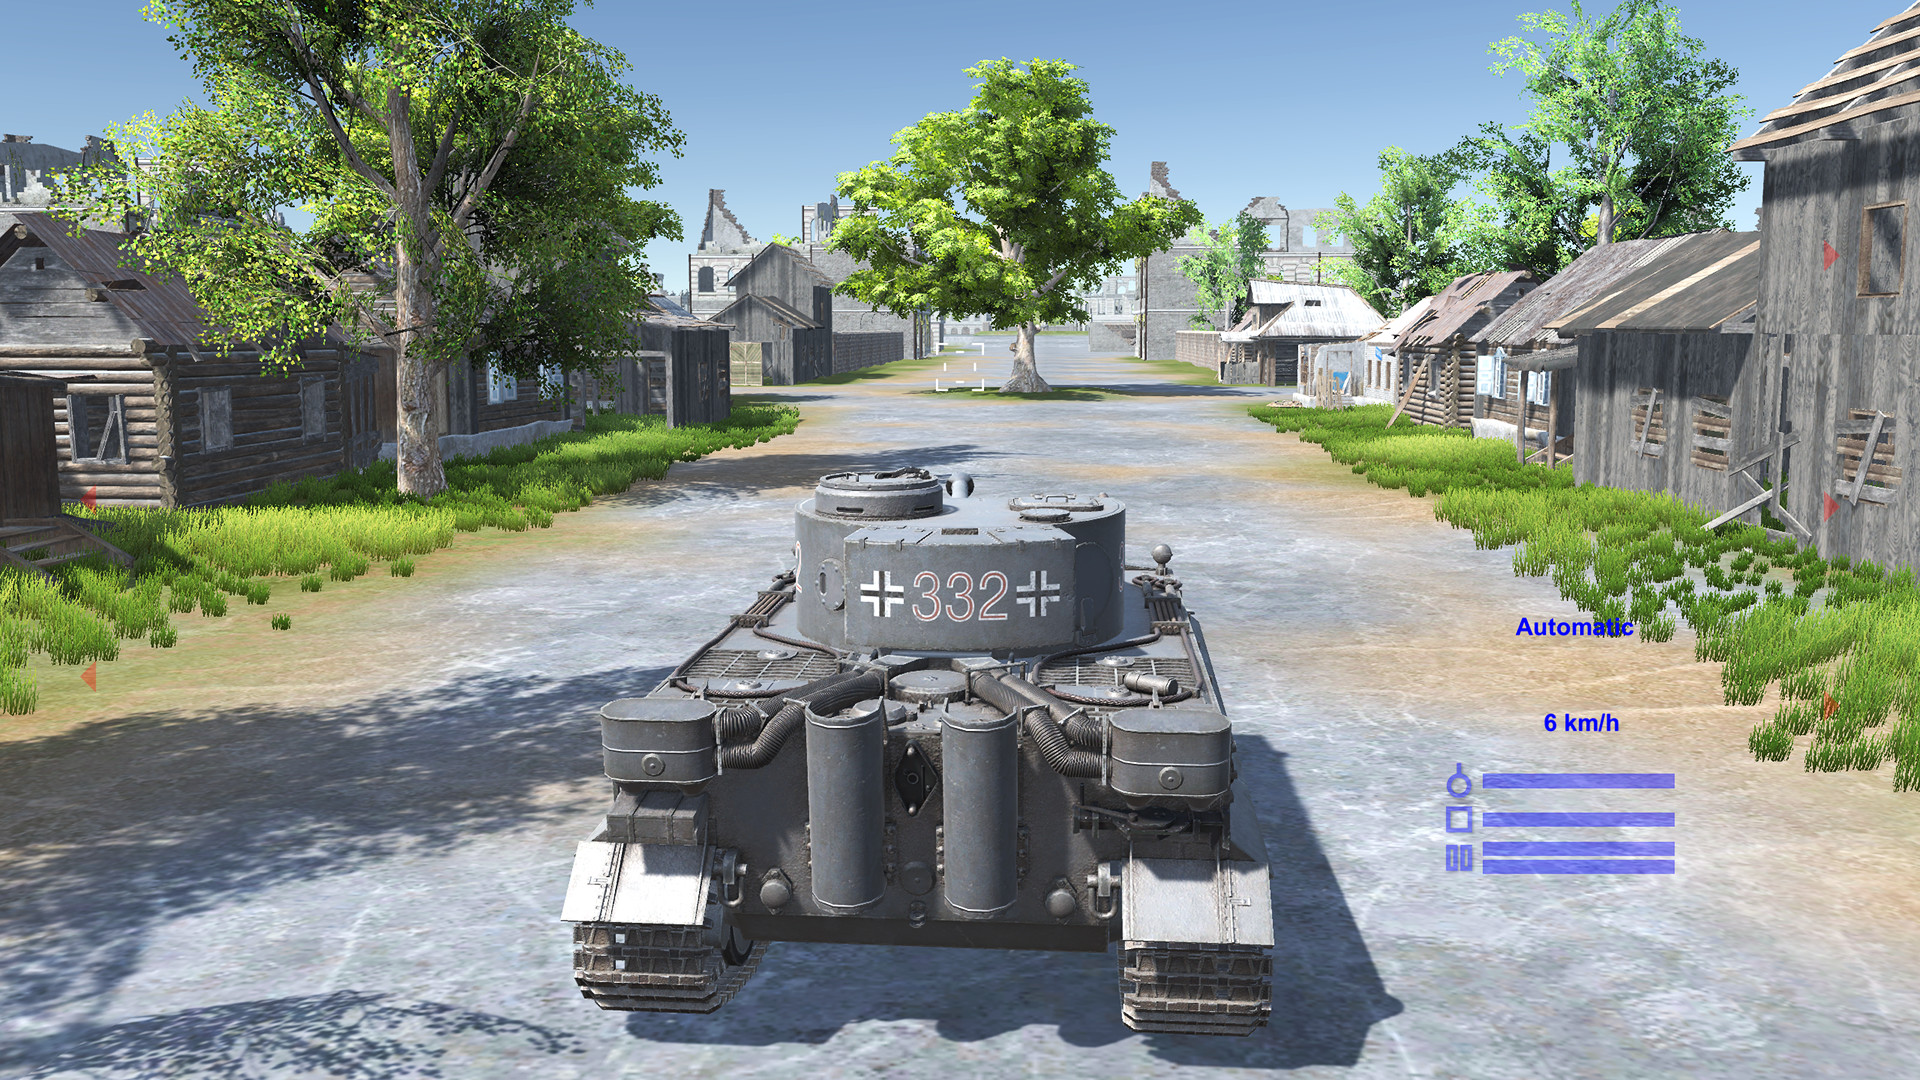 WWII Tanks Battle Battlefield Steam CD Key